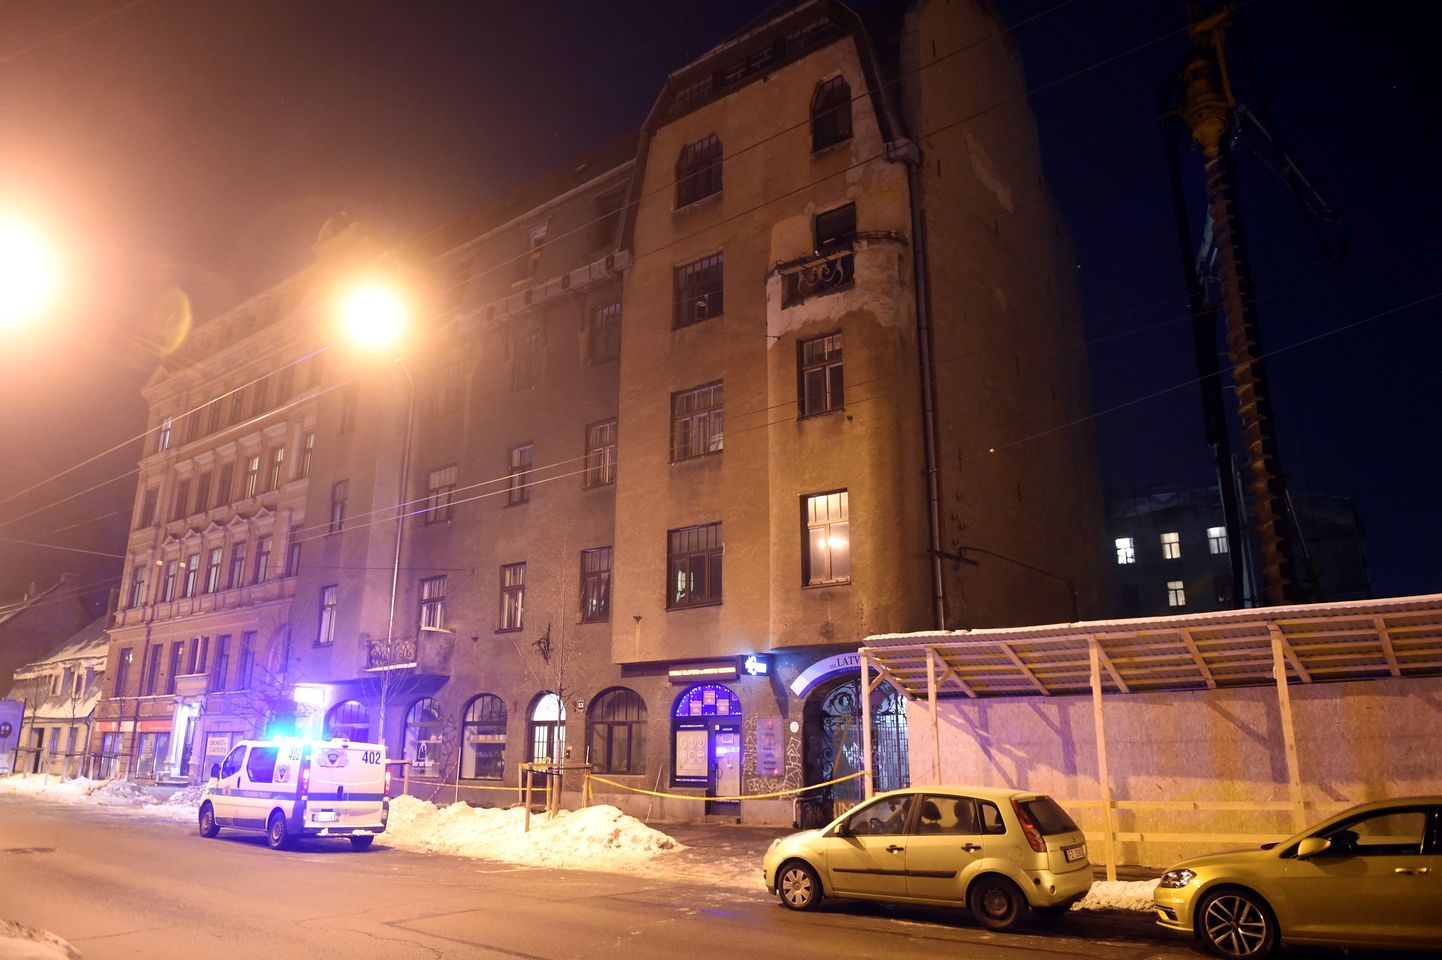 Dzīvojamā māja Ģertrūdes ielā 63, kuras sienās parādījušas plaisas, un Rīgas pilsētas būvvalde apturējusi nama ekspluatāciju.